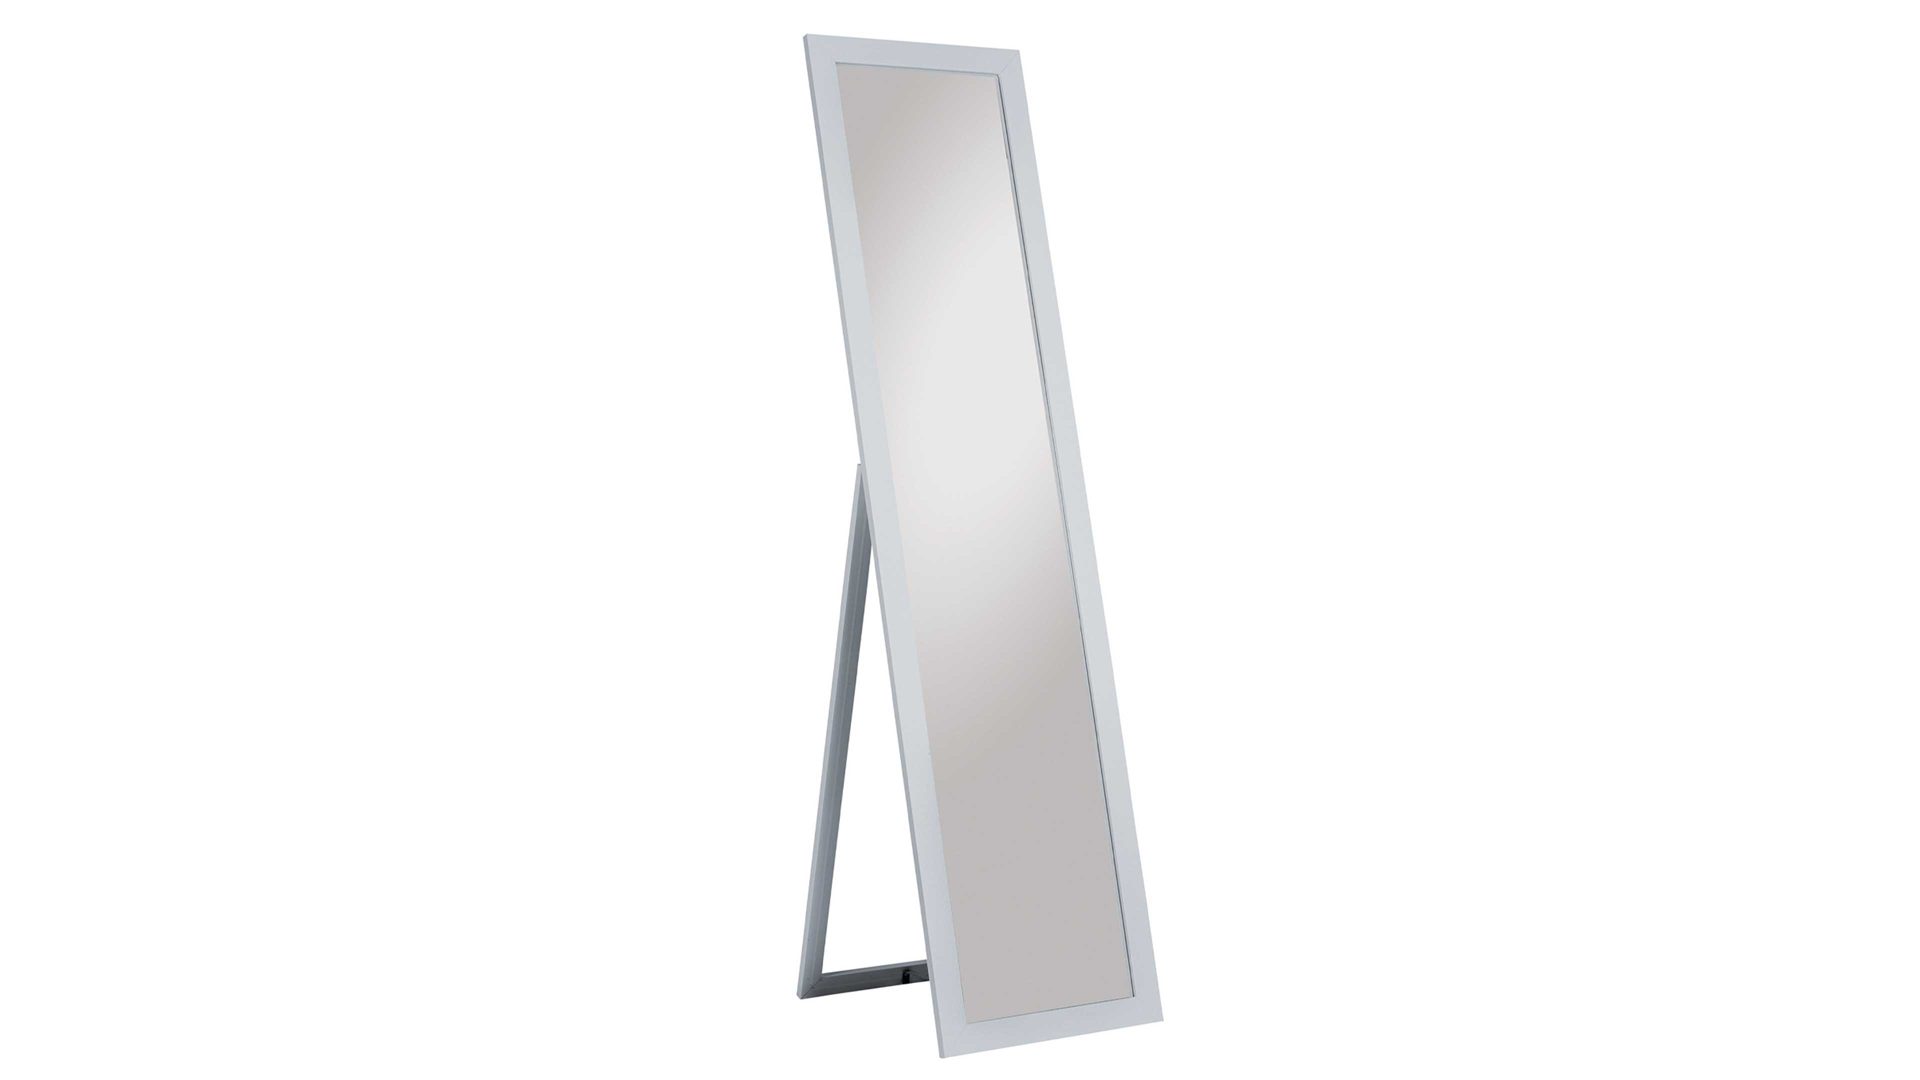 Standspiegel Spiegelprofi aus Spiegel in Metallfarben Rahmen-Standspiegel Emilia silberfarbener Rahmen & Fuß – Höhe ca. 160 cm